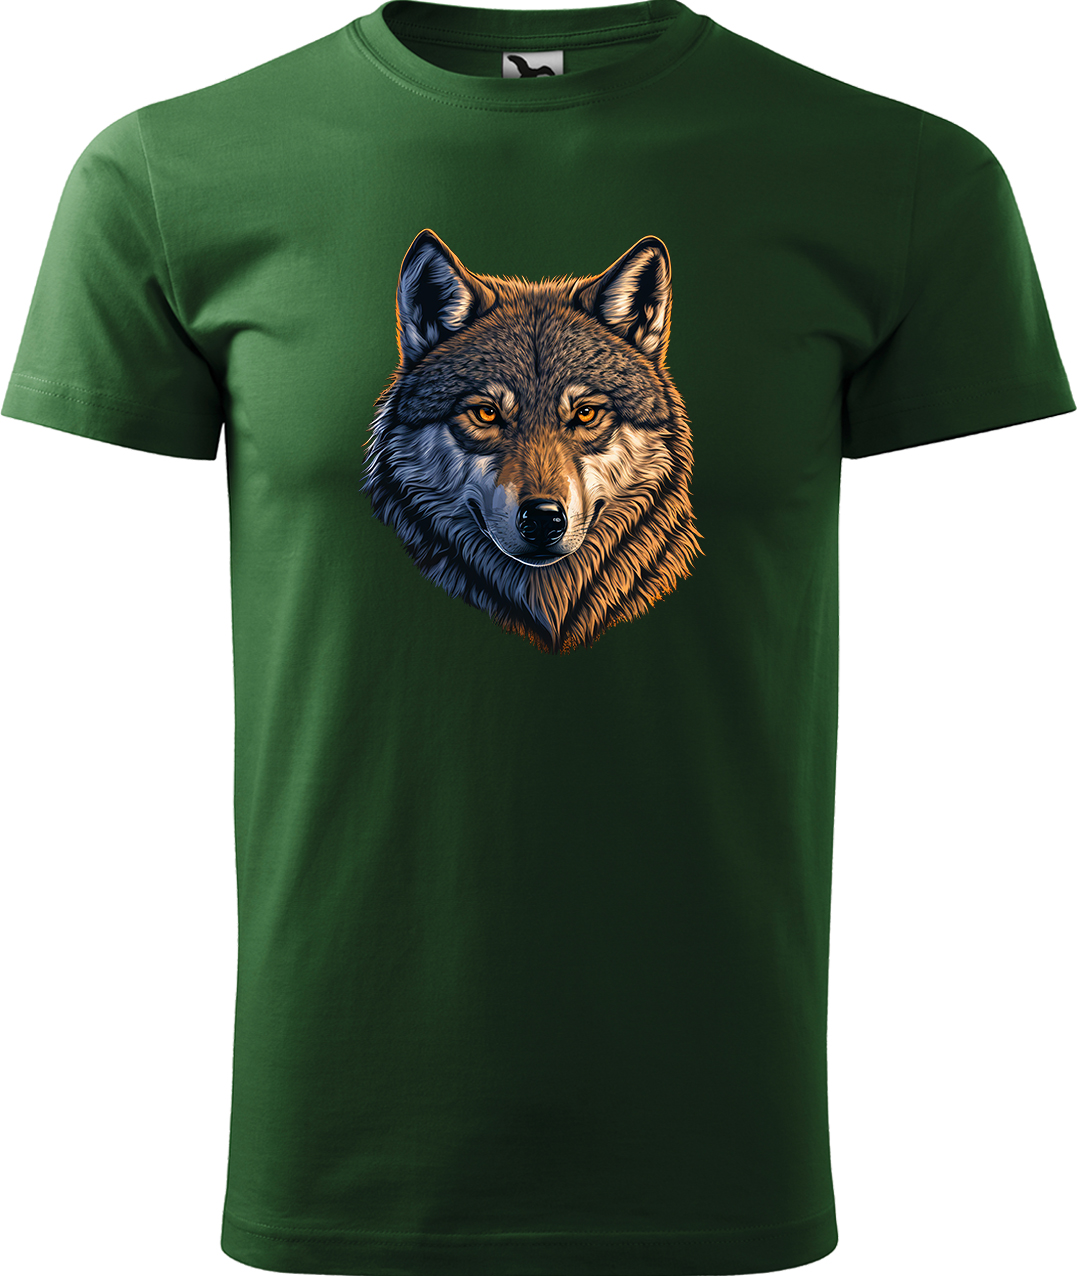 Pánské tričko s vlkem - Hlava vlka Velikost: M, Barva: Lahvově zelená (06), Střih: pánský